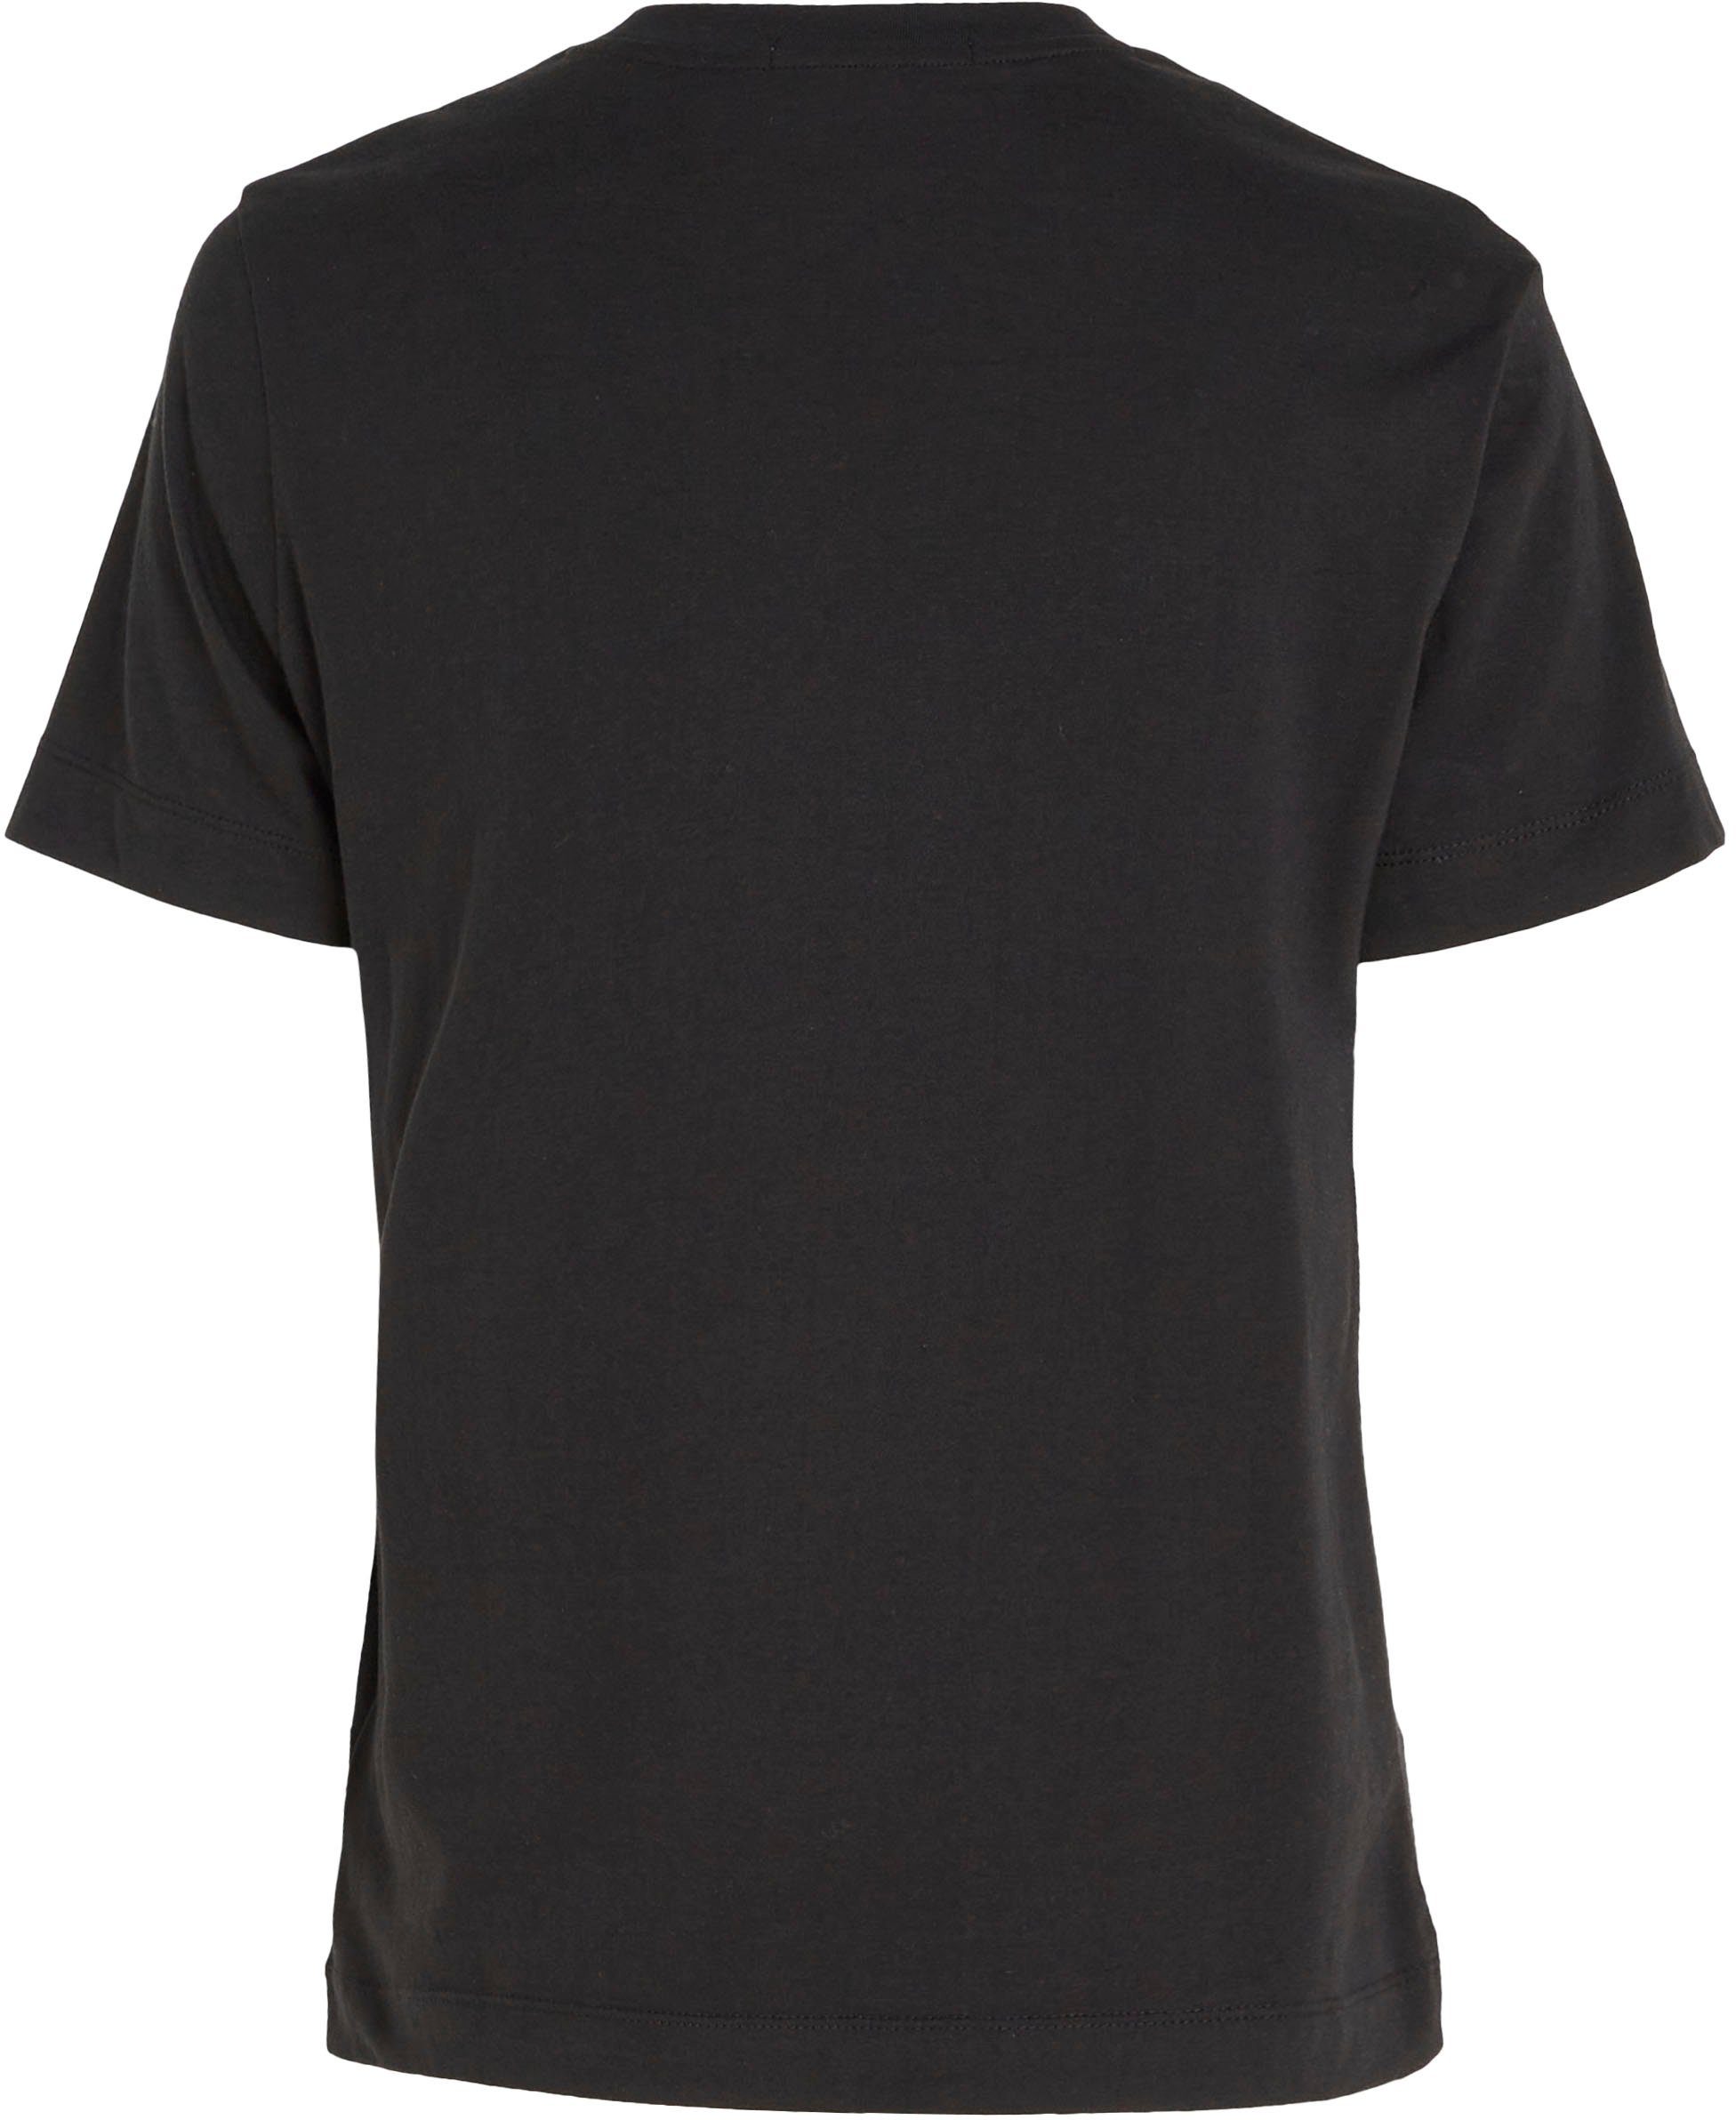 Klein Jeans Calvin Logodruck mit dezentem LOGO STACKED Ck Calvin MODERN Black STRAIGHT Klein TEE Jeans T-Shirt